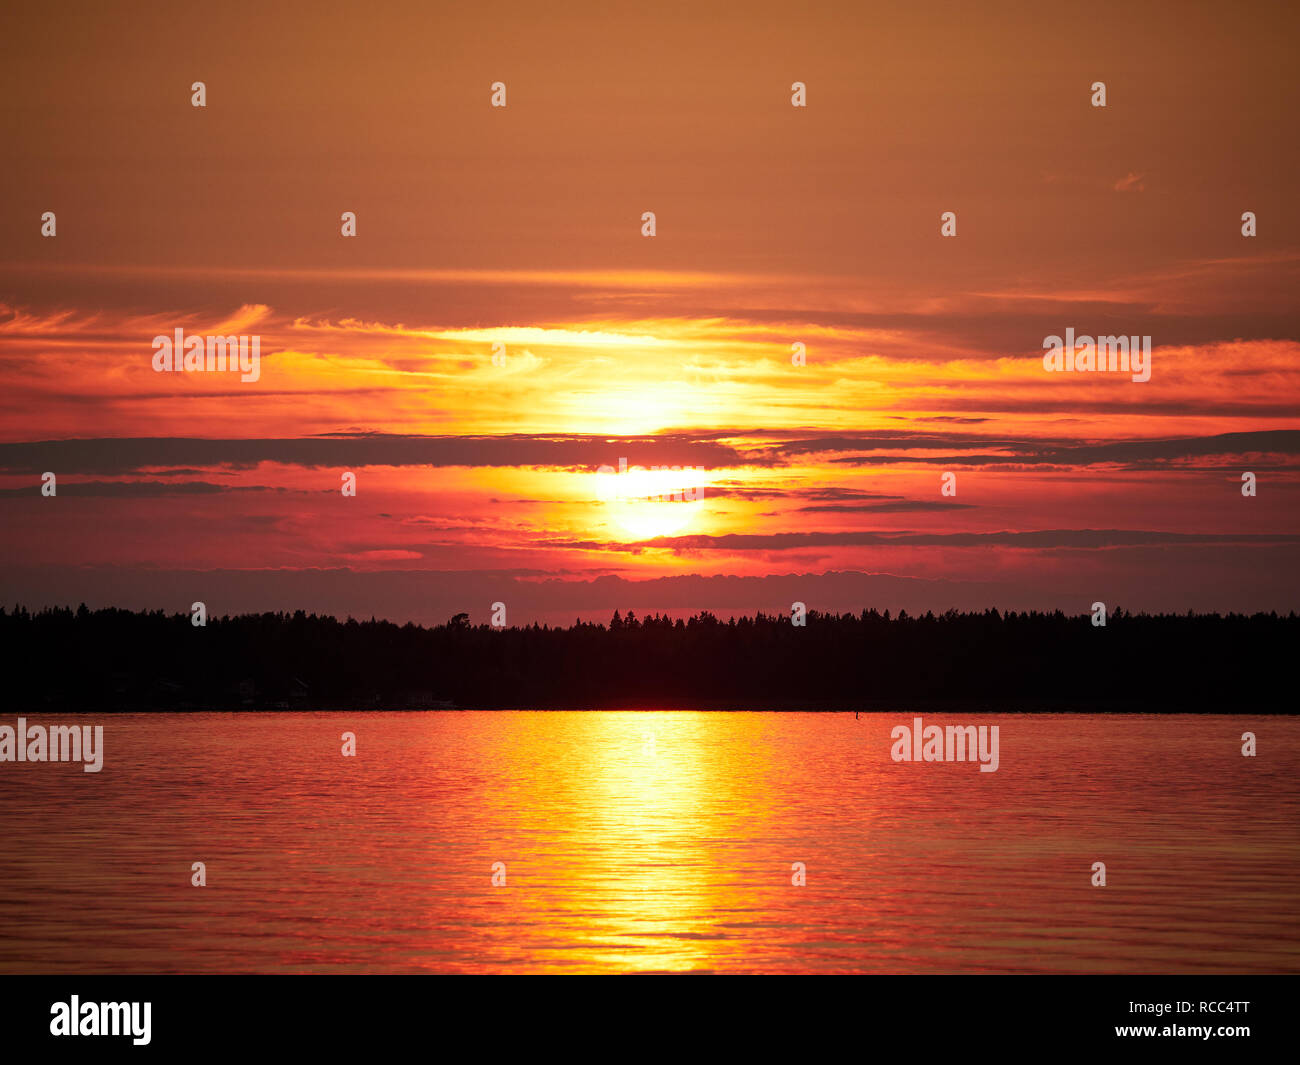 Roter Sonnenuntergang Himmel mit der Sonne und bunten Wolken über einem ruhigen Meer in Vaasa, Finnland. Die helle Scheibe der Sonne wird teilweise von Wolken verdeckt. Stockfoto